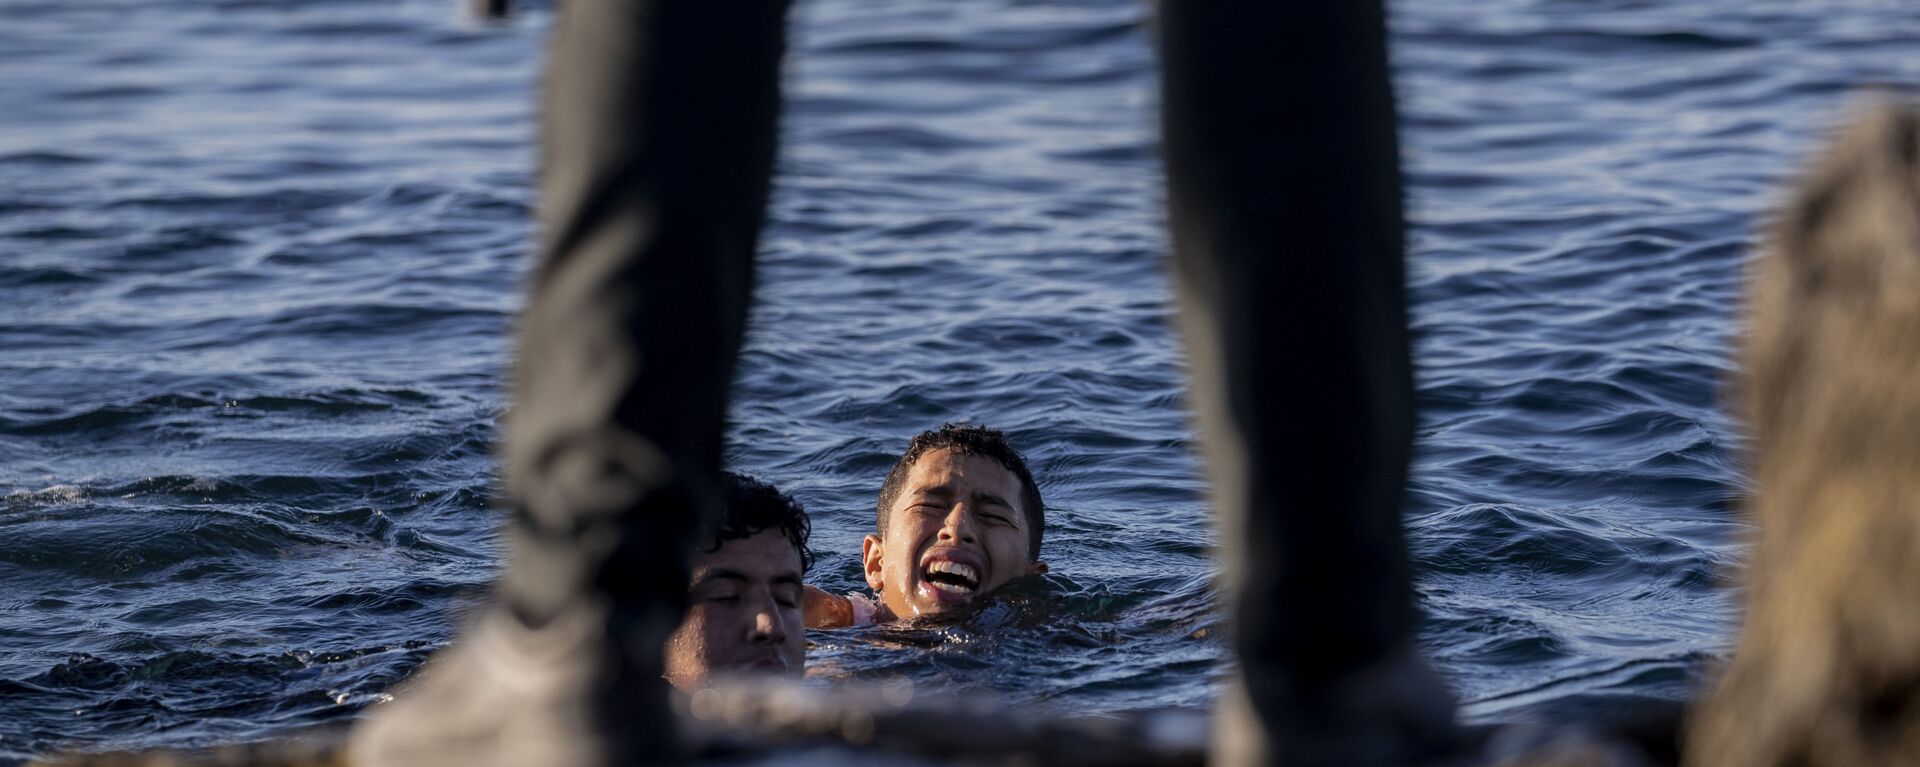 Представитель Испанской гражданской гвардии ожидает мигрантов на берегу в испанском анклаве Сеута, недалеко от границы Марокко и Испании - Sputnik Latvija, 1920, 27.05.2021